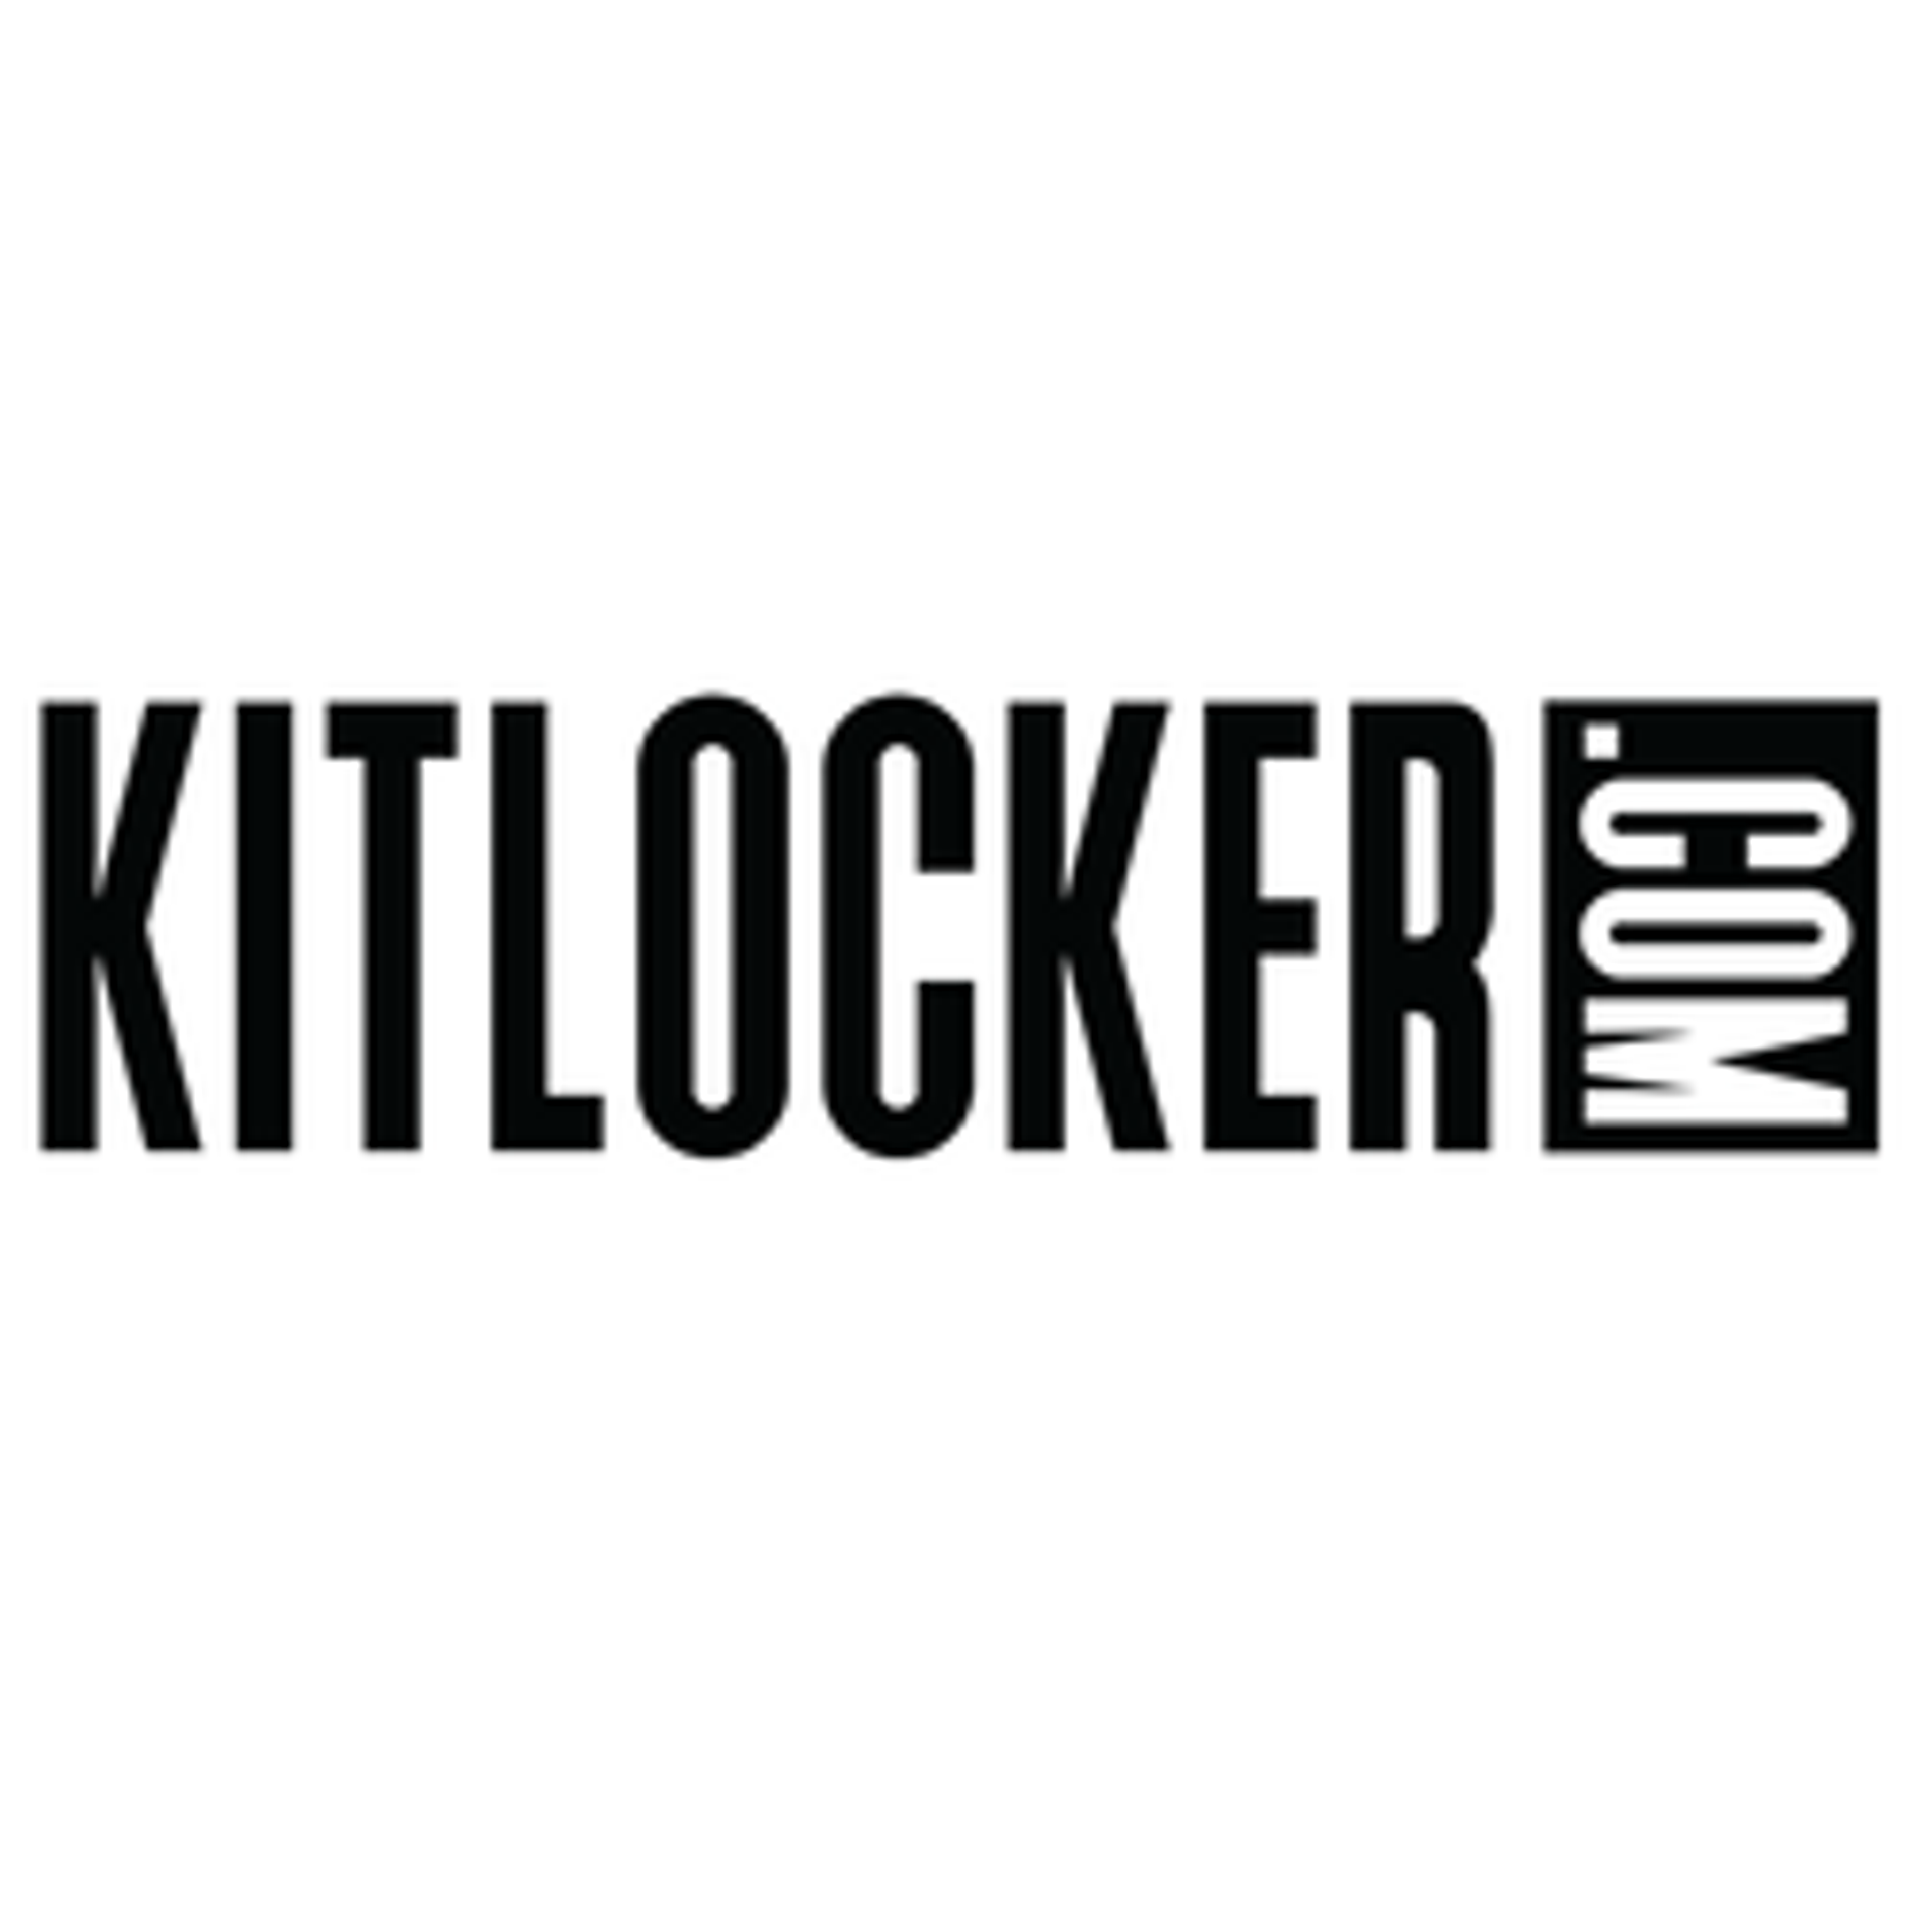  Kitlocker 